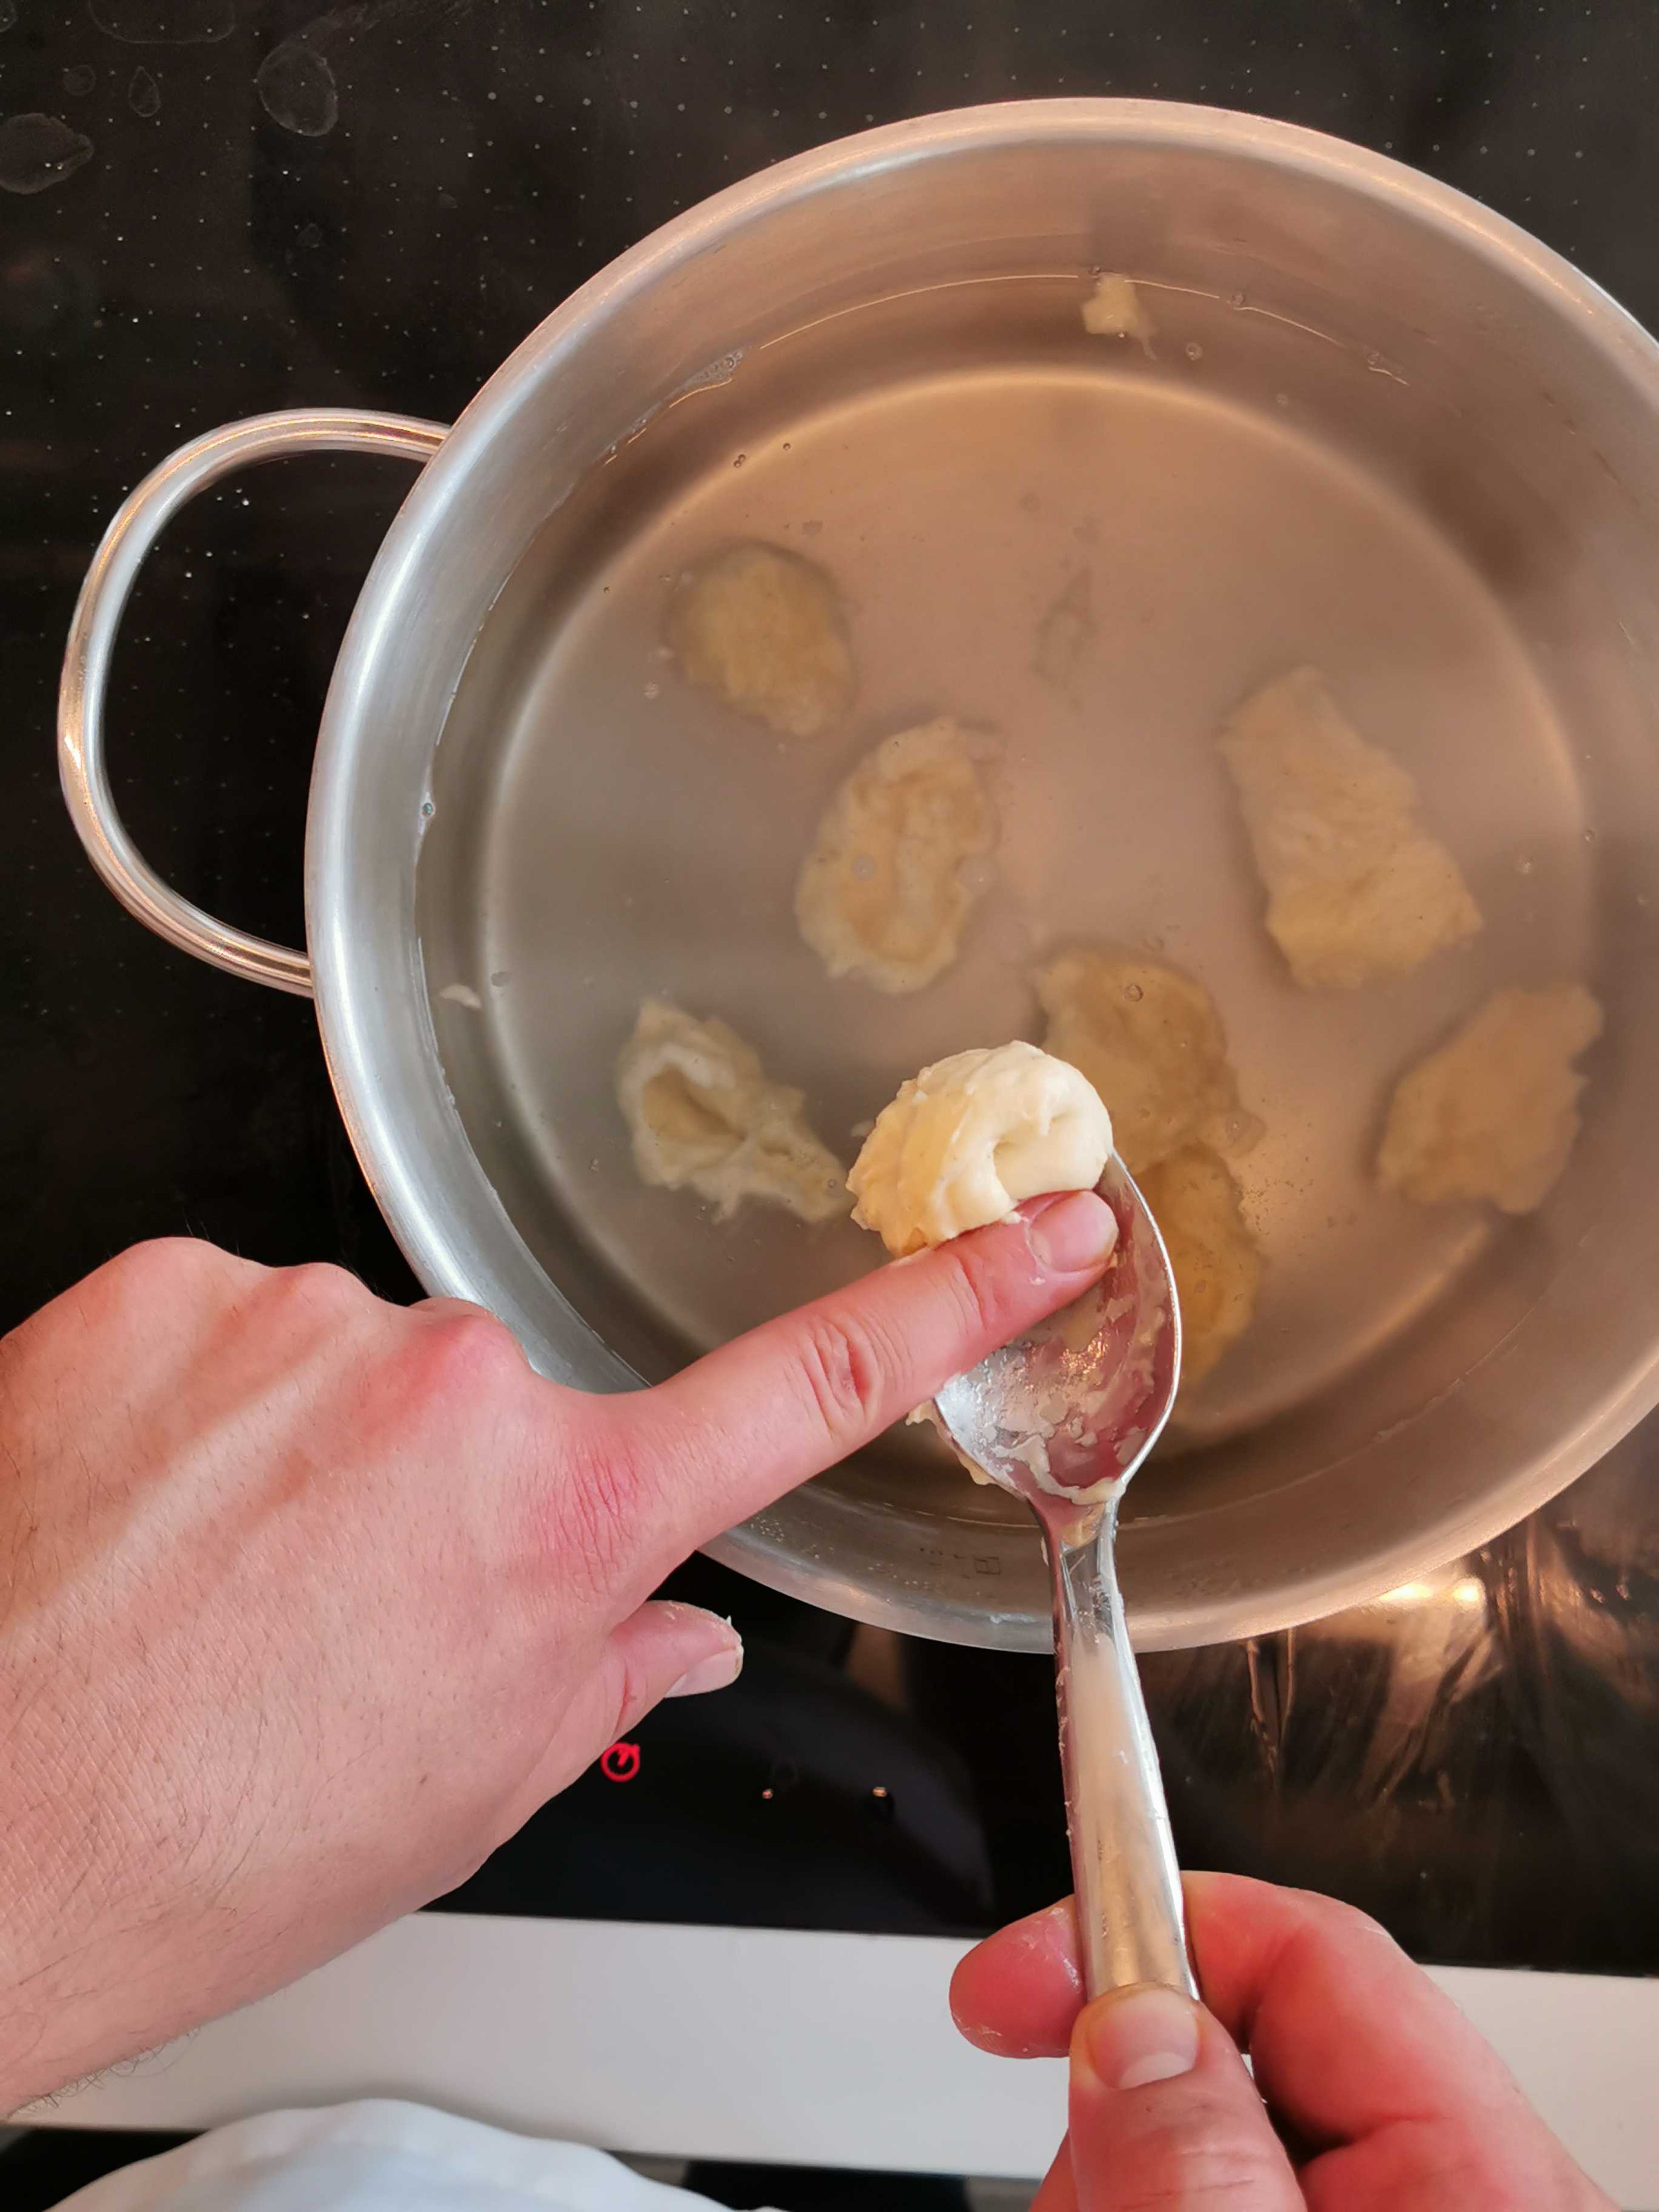 Vom Teig mit einem Esslöffel Teigteile abstechen, in das kochende Wasser geben und 5 Minuten ziehen lassen. Kartoffeln schälen, waschen, in Stifte schneiden und in Salzwasser garen.